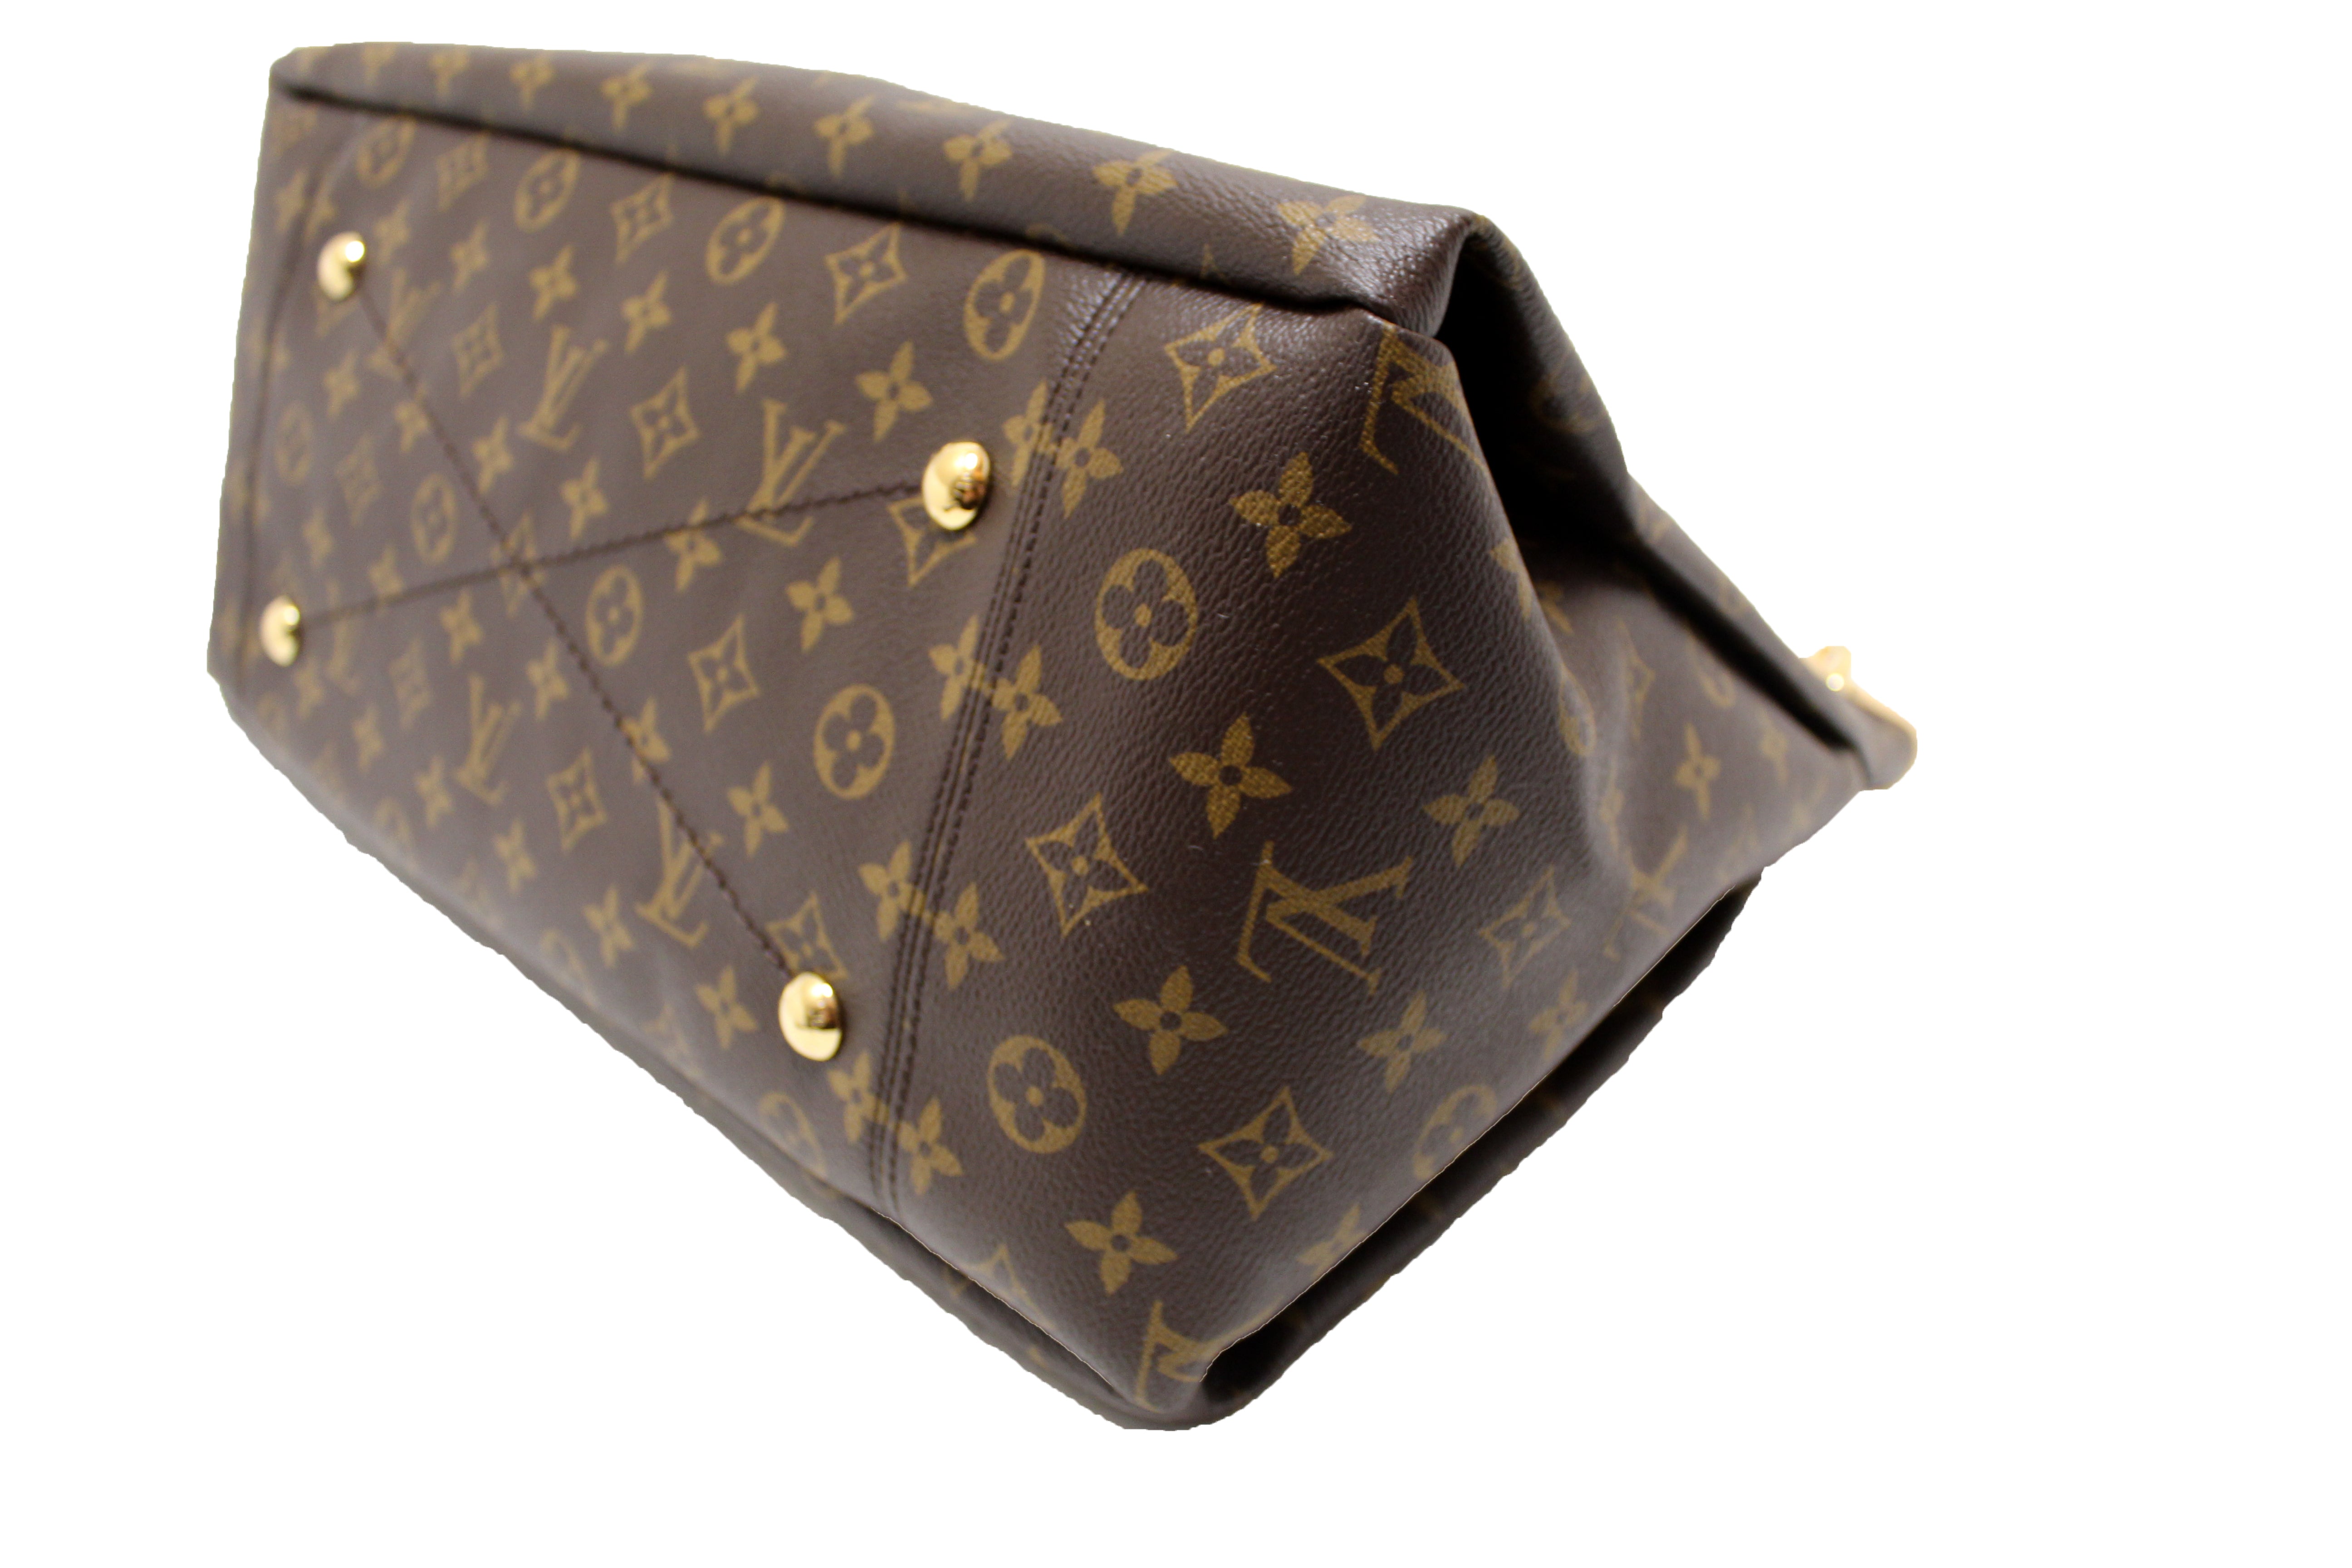 NEW Authentic Louis Vuitton Classic Monogram Canvas Artsy MM Shoulder Bag